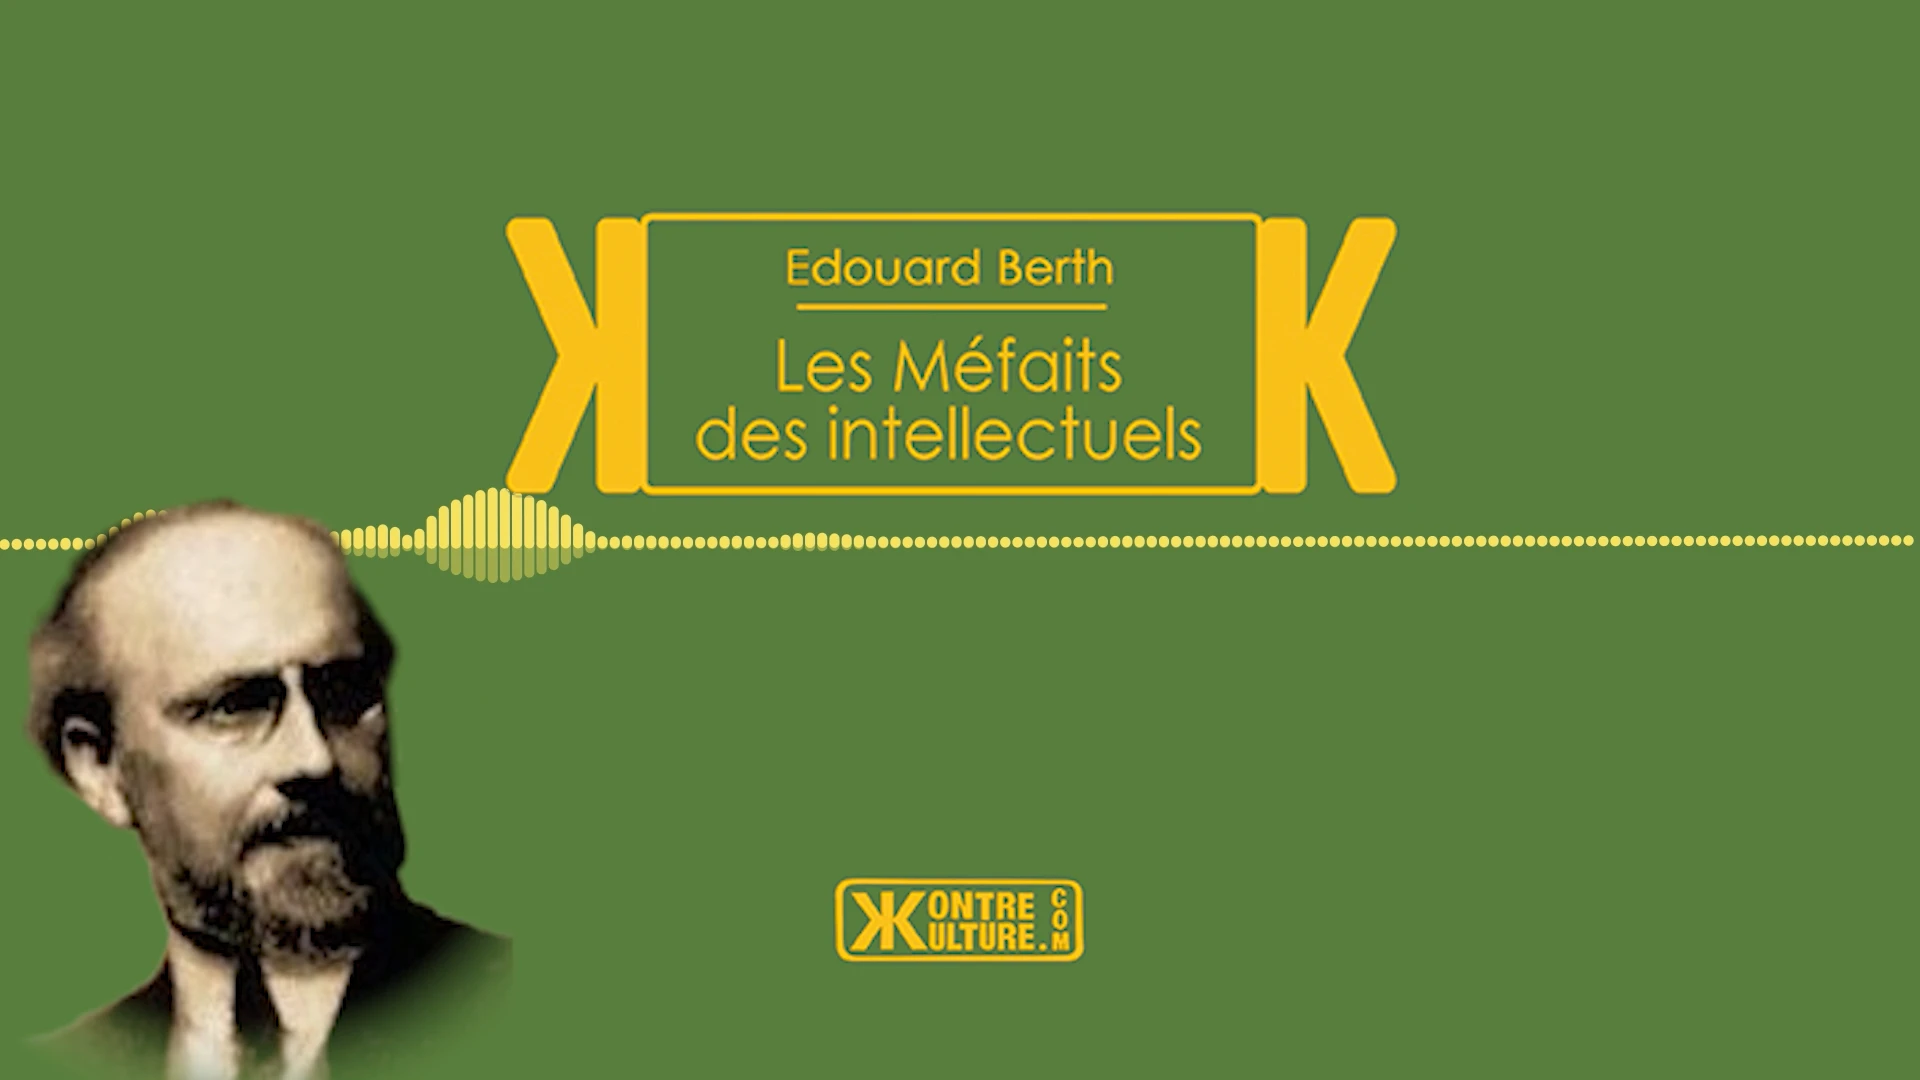 Kontre Kulture présente Les Méfaits des intellectuels d’Edouard Berth